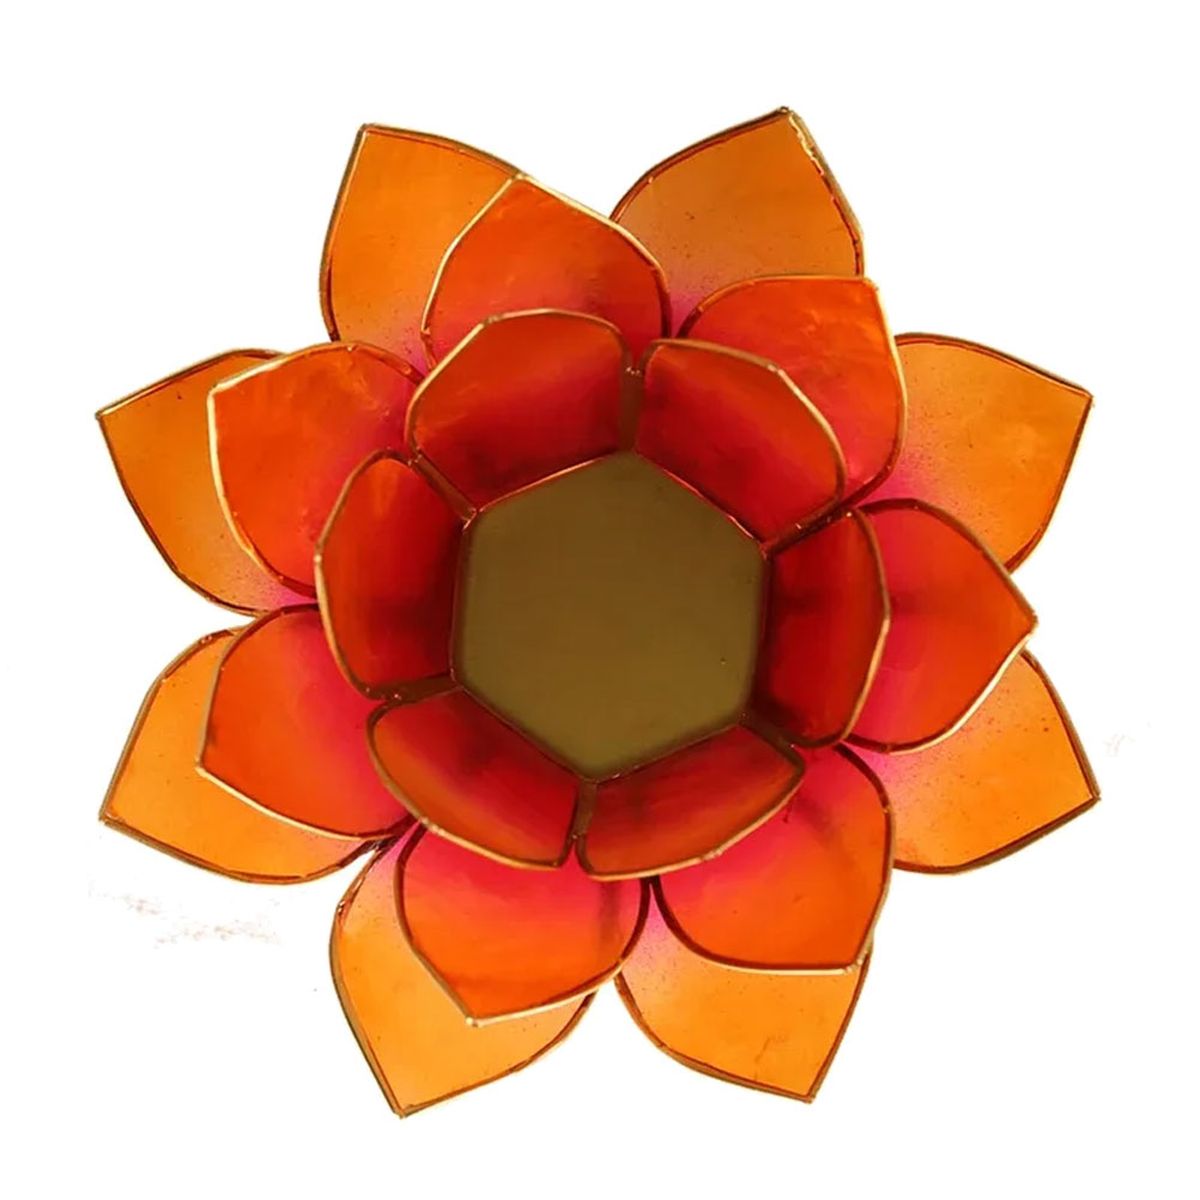 Lotus candleholder chakra 2 orange pink goldlining